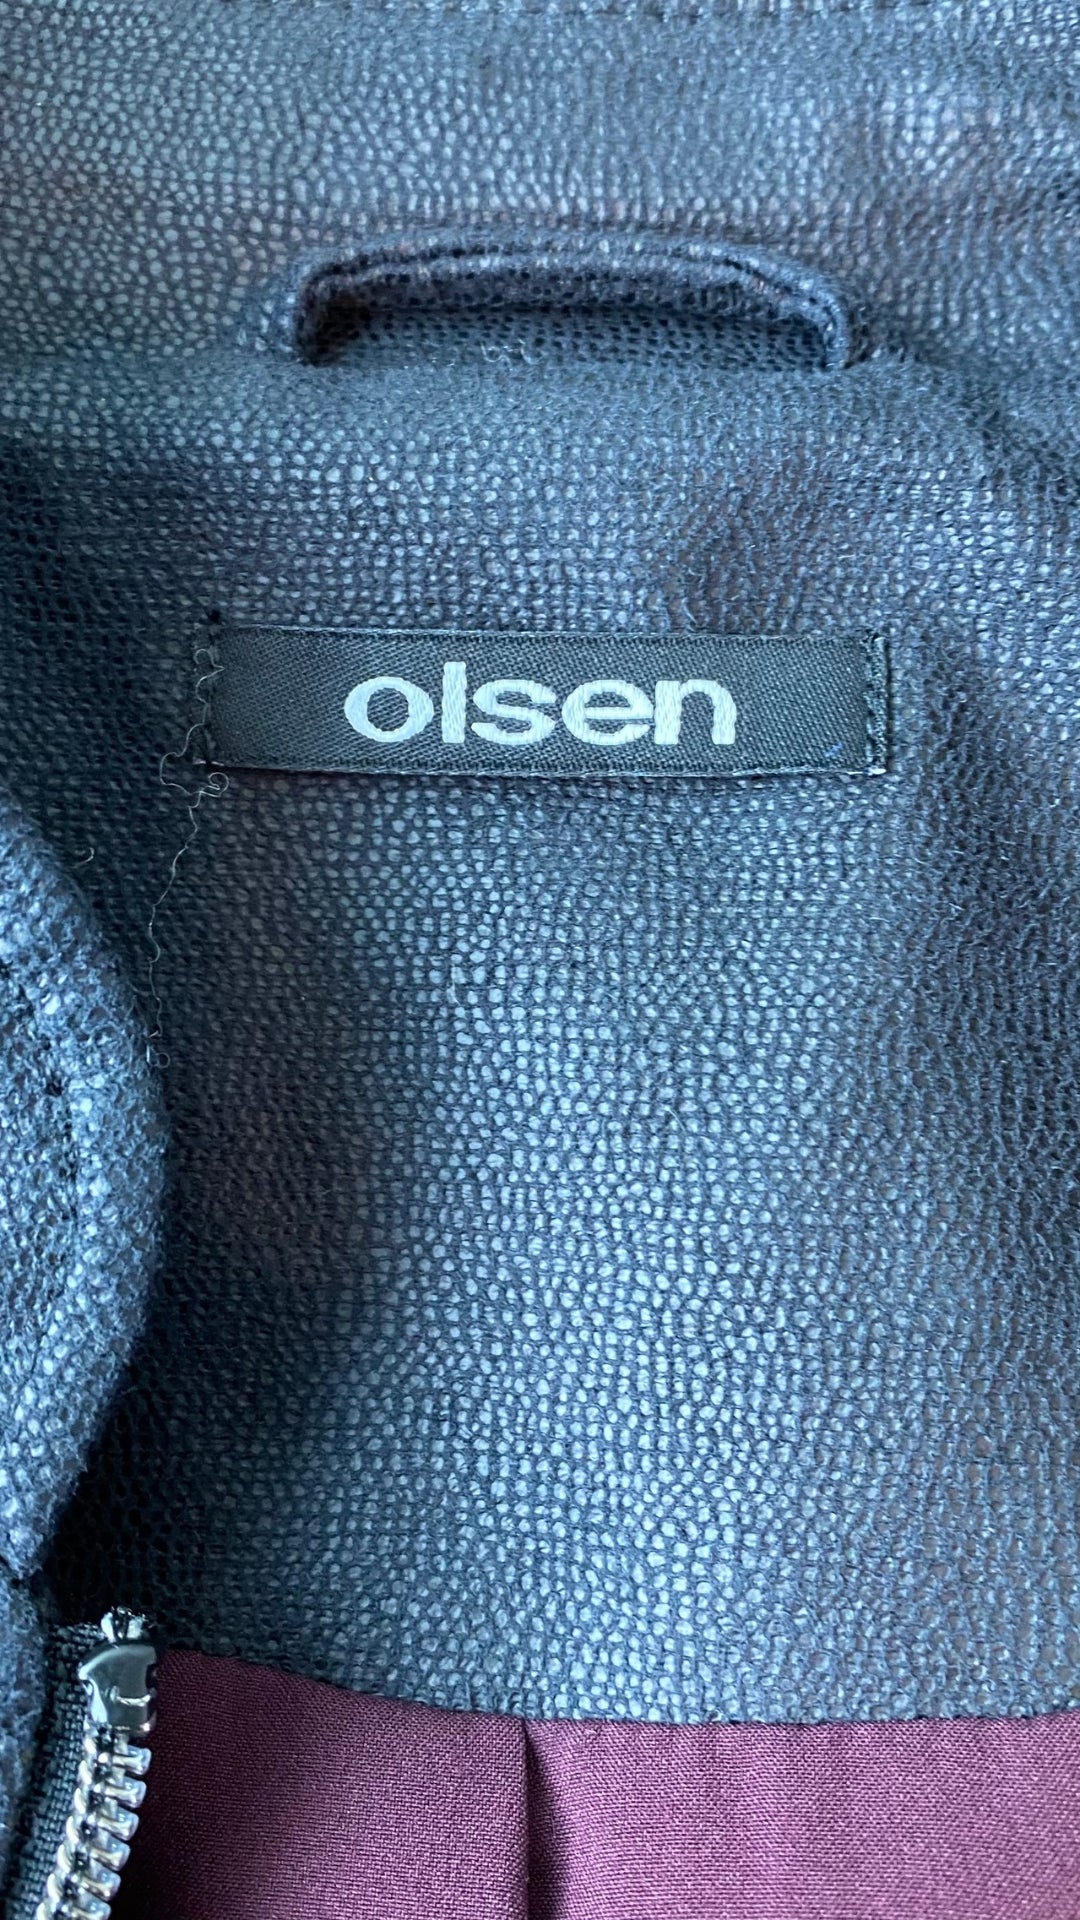 Blouson style aviateur extensible Olsen, taille large. Vue de l'étiquette de marque.